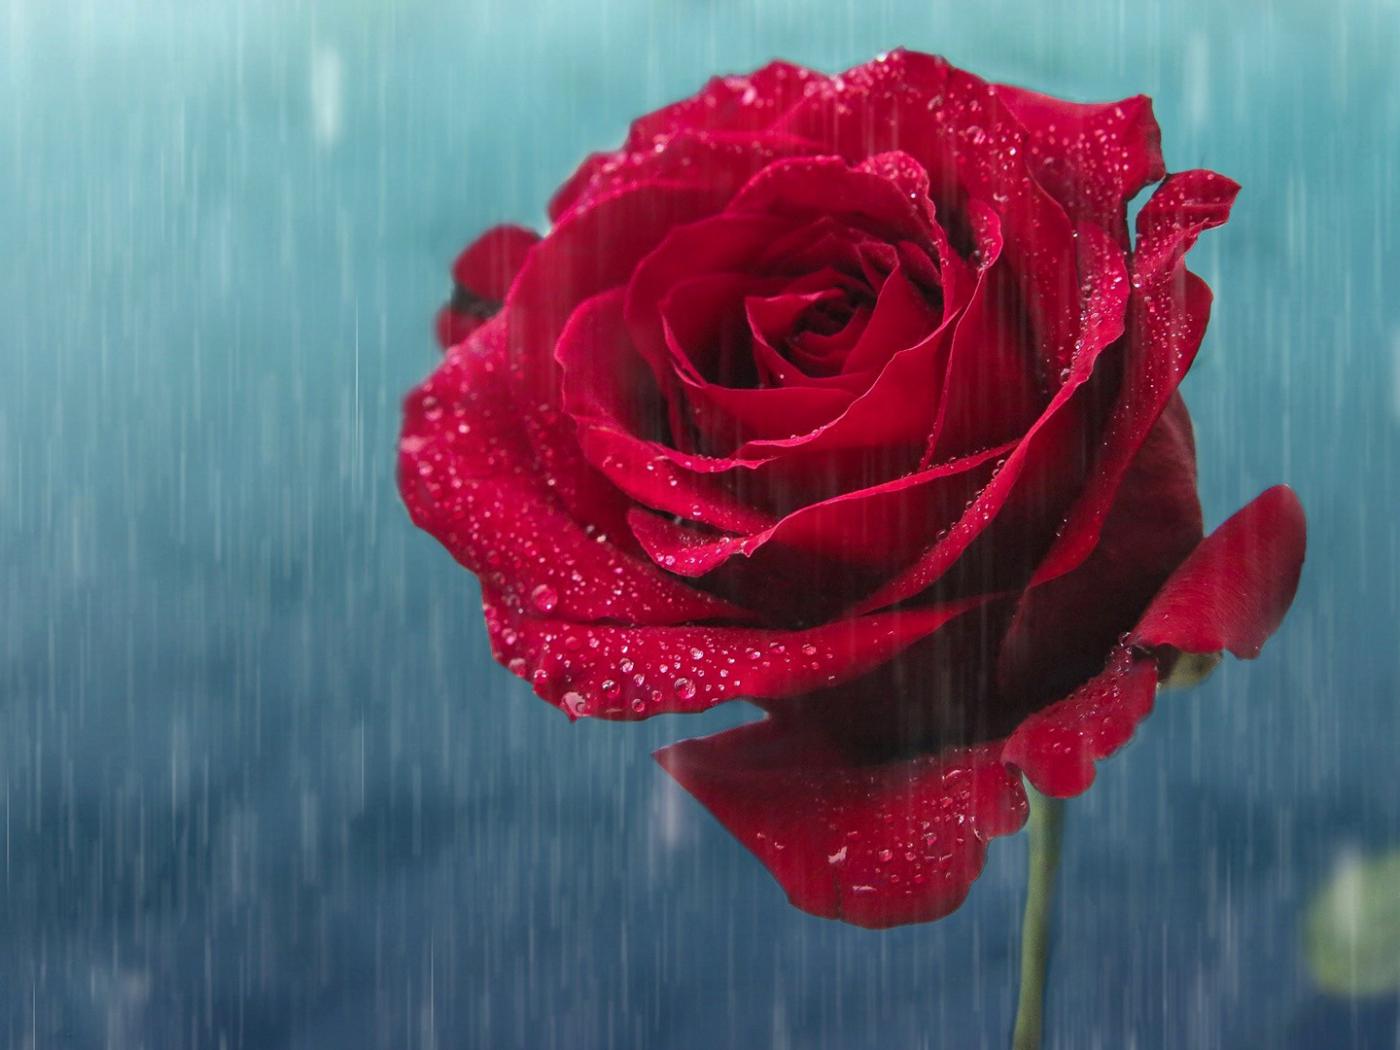 rain rose wallpaper,garden roses,rose,red,flower,petal